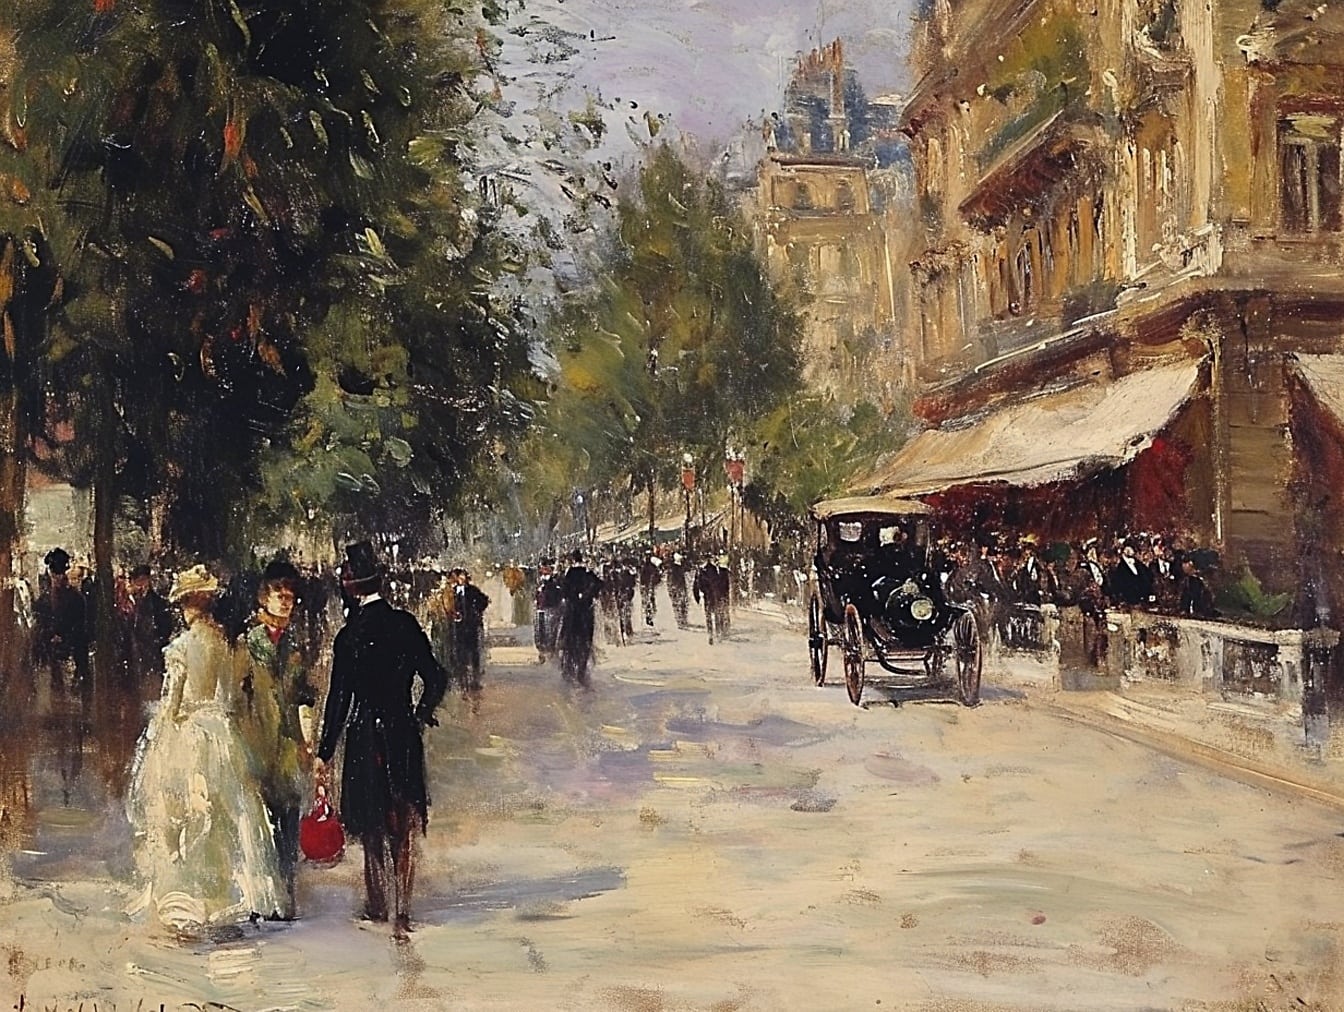 Oljemålning av människor som går på en gata i centrum som skildrar 19-talets livsstil